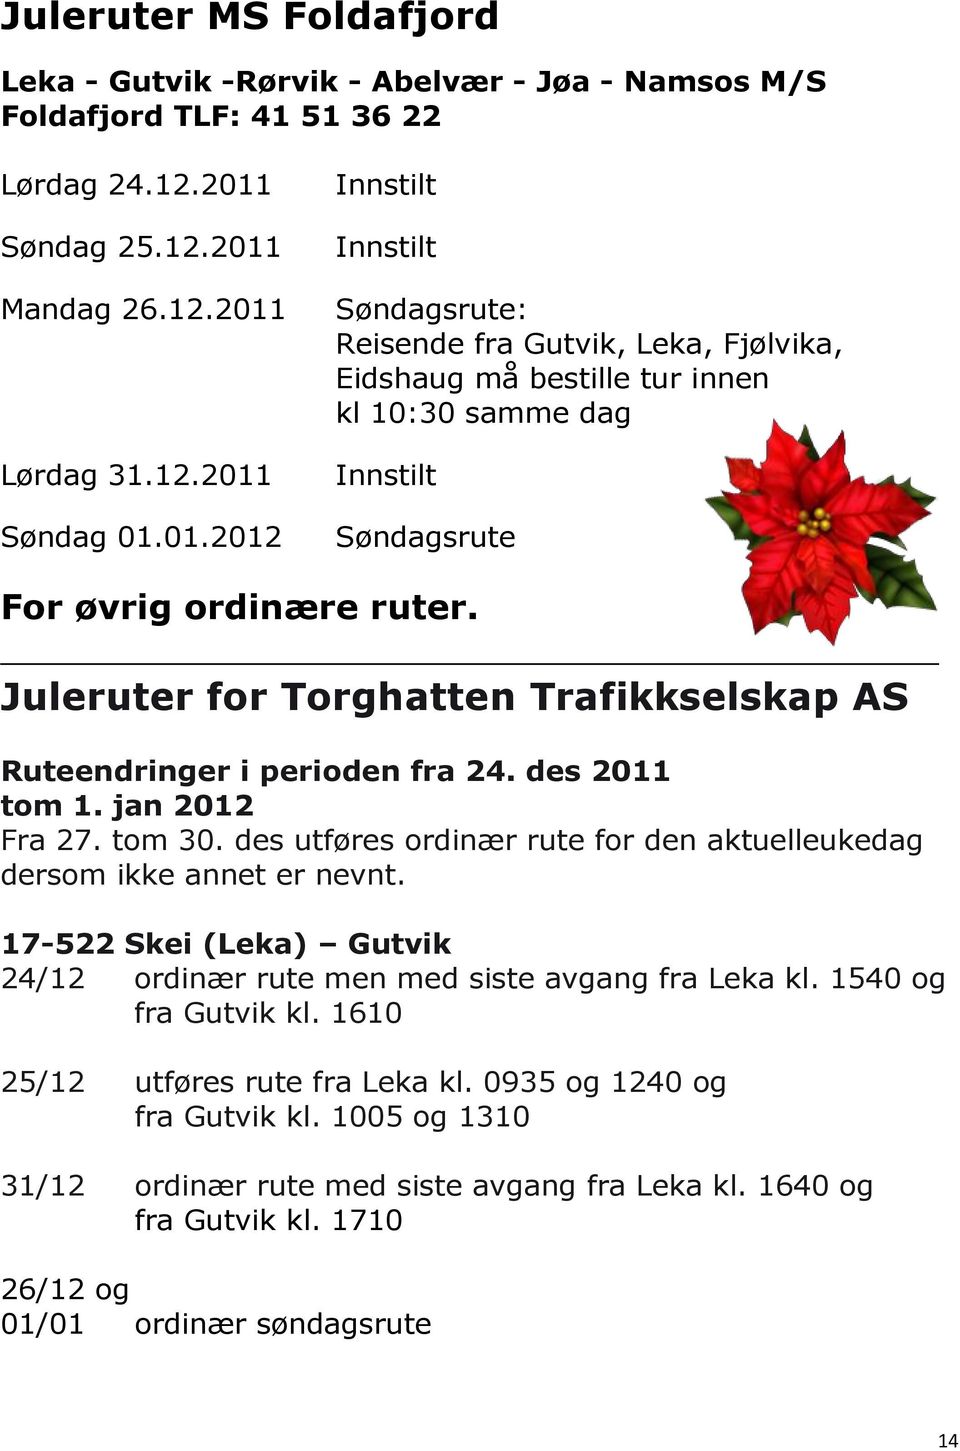 Juleruter for Torghatten Trafikkselskap AS Ruteendringer i perioden fra 24. des 2011 tom 1. jan 2012 Fra 27. tom 30. des utføres ordinær rute for den aktuelleukedag dersom ikke annet er nevnt.